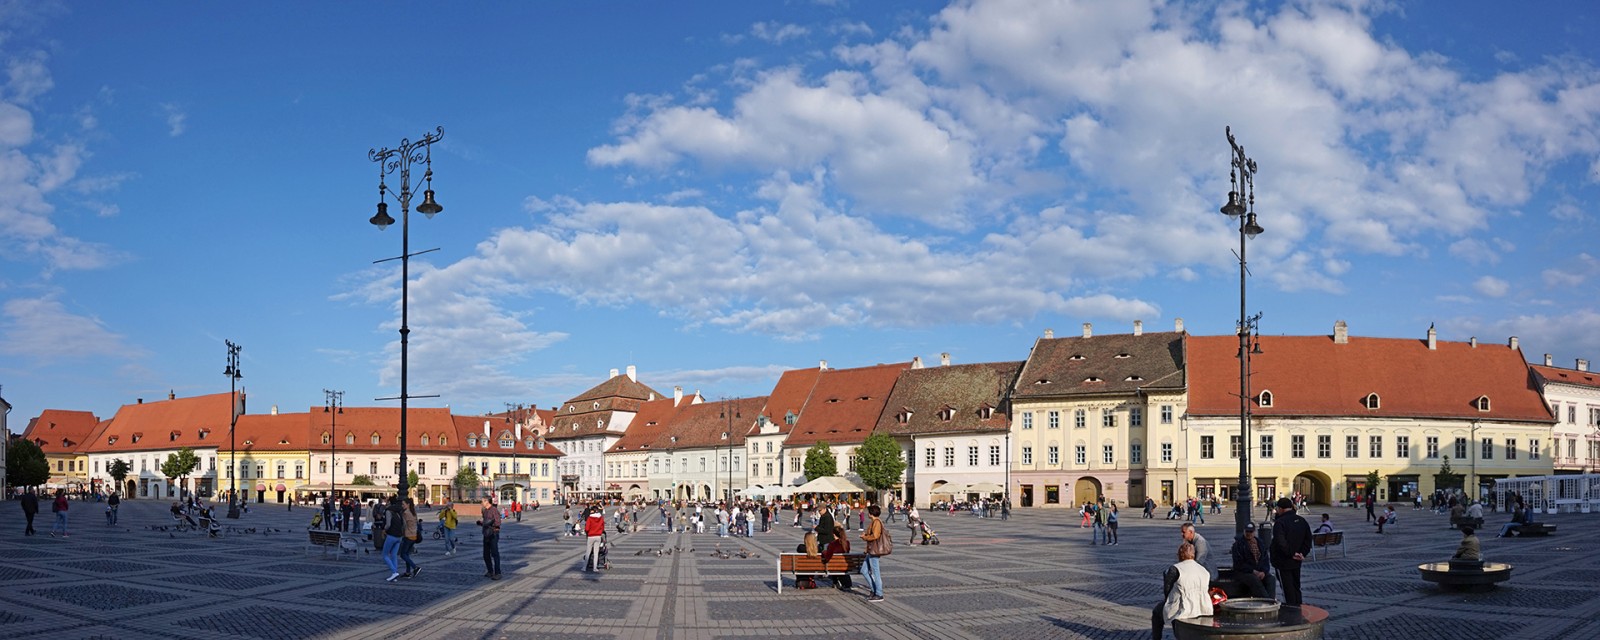 Piața Mare Sibiu - panoramă 1